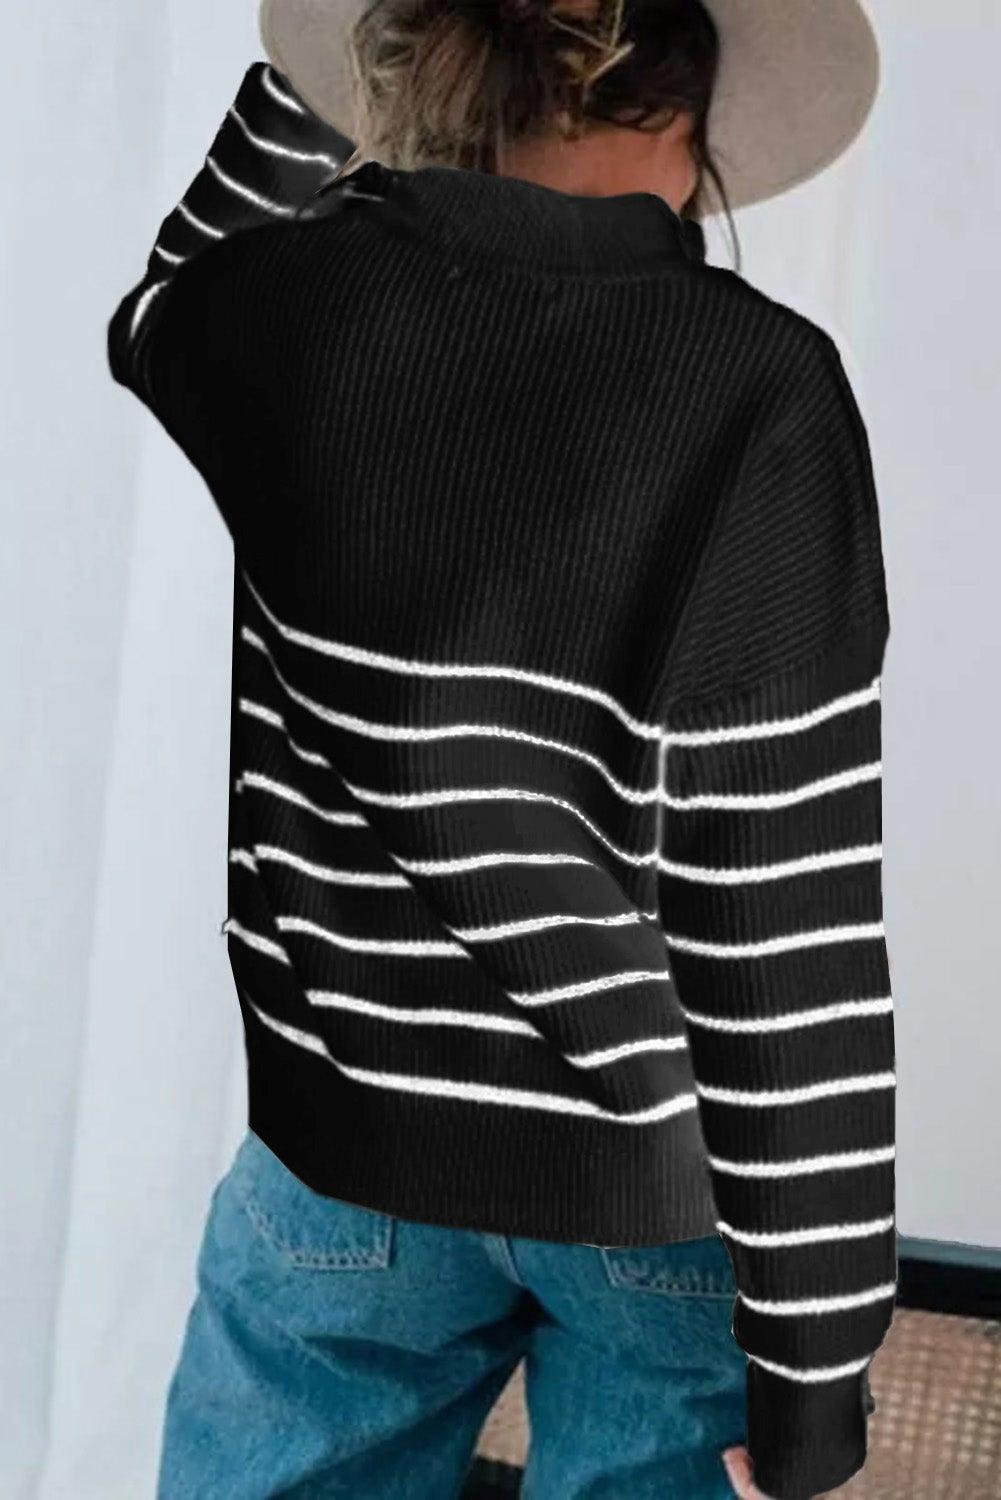 Beige Striped Zipper Knit Sweater - L & M Kee, LLC